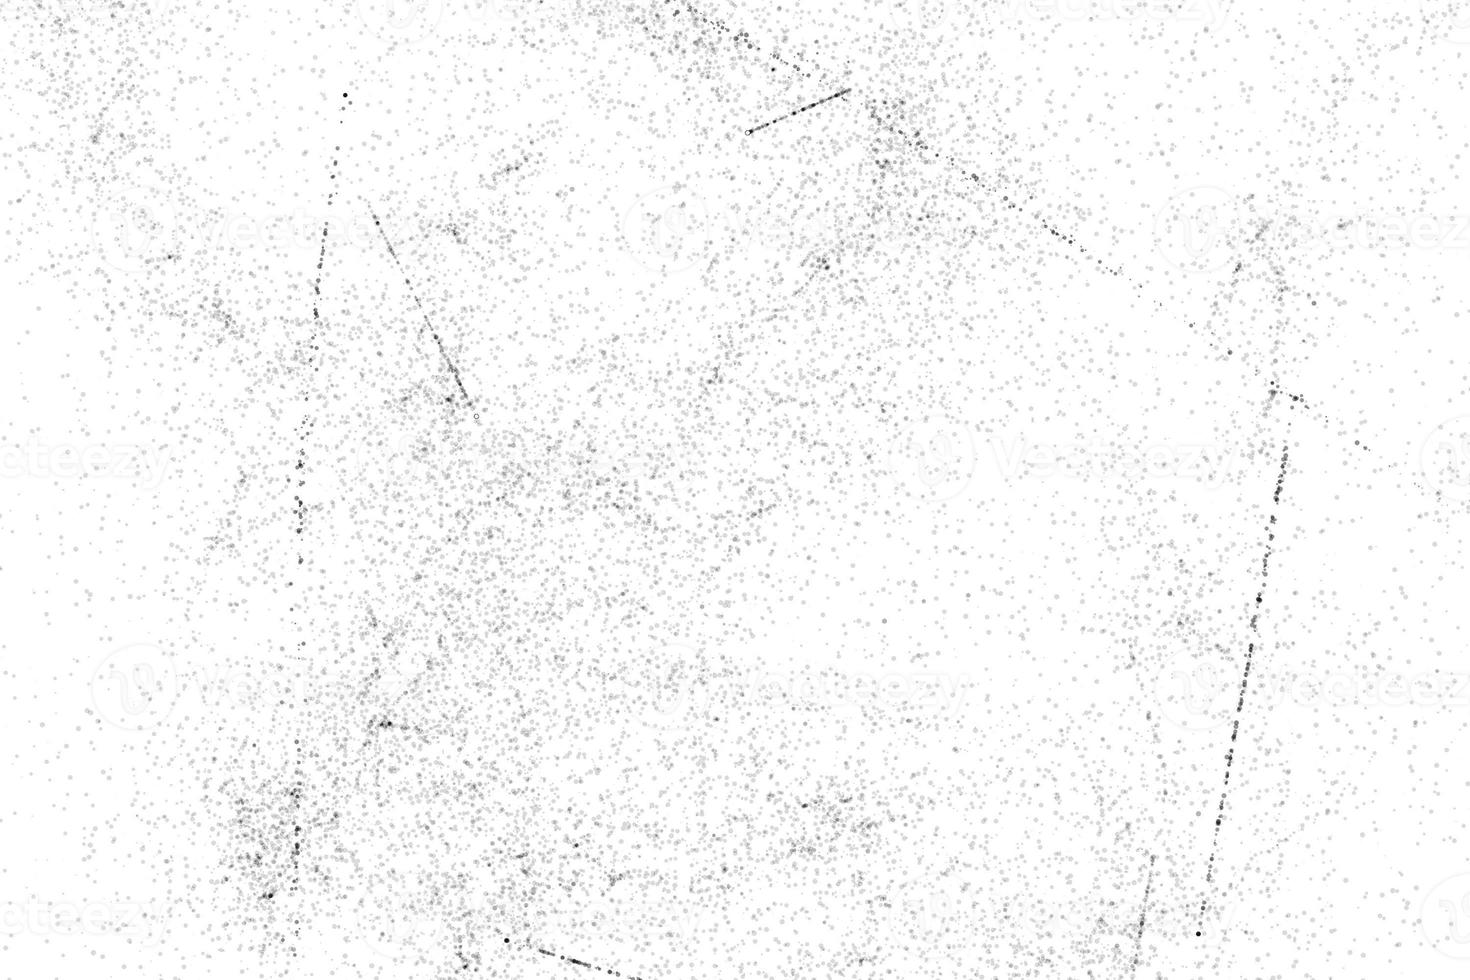 poeira e backgrounds.grunge texturizado riscado fundo branco e preto da parede background.abstract, metal velho com ferrugem. sobreponha a ilustração sobre qualquer design para criar sujo foto